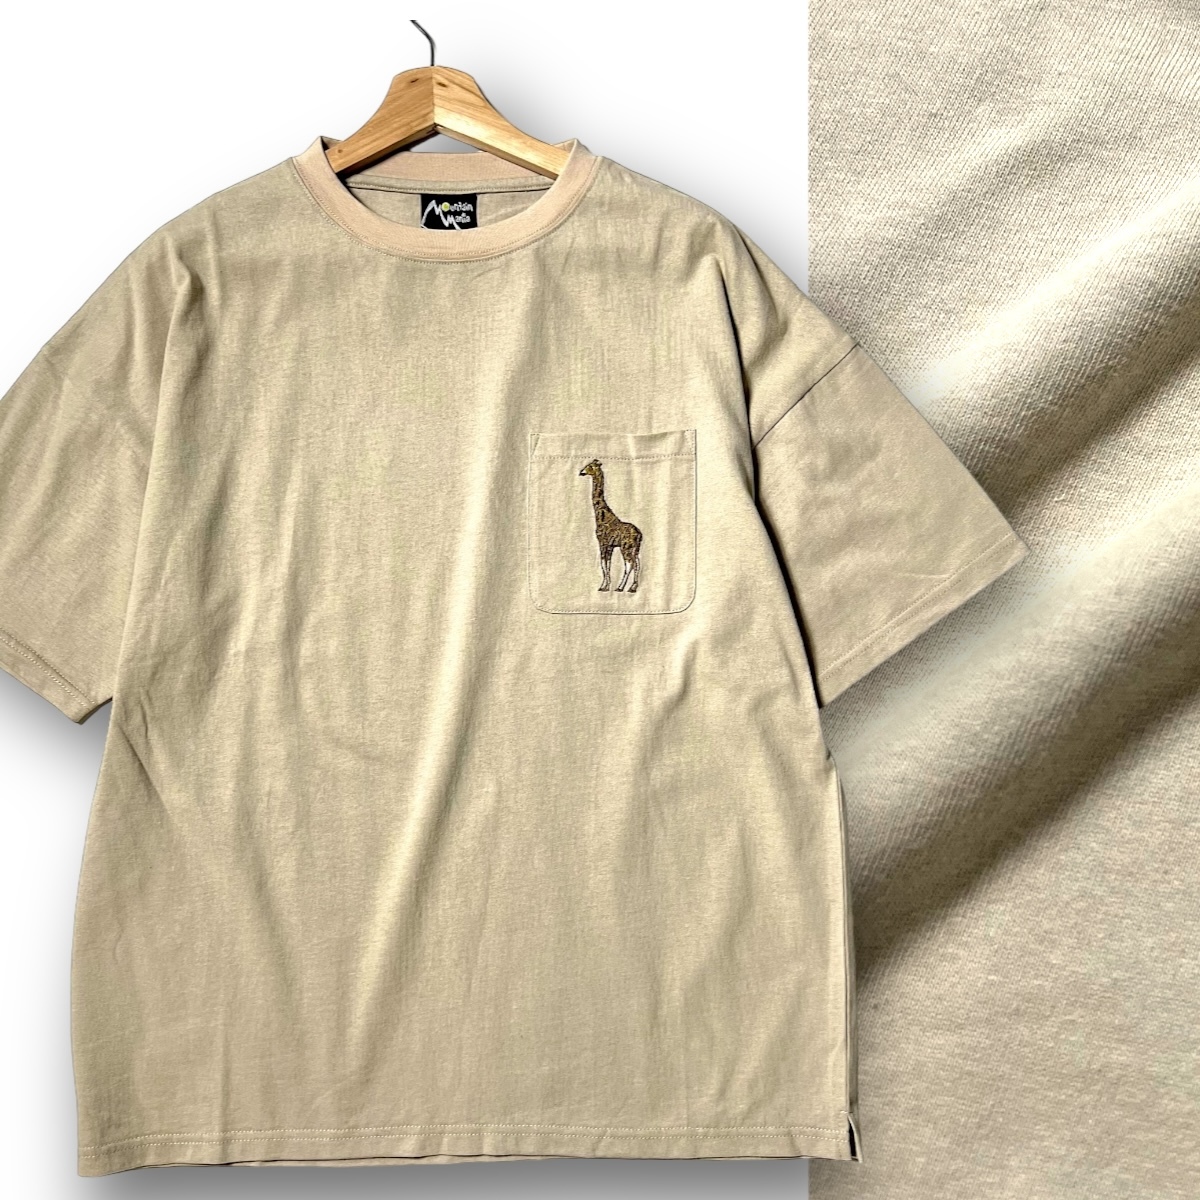 新品 Mountain Mania マウンテンマニア 速乾コットン 胸ポケ キリン刺繍 リラックスフィット 半袖 Tシャツ アウトドアウェア ◆B3688の画像1